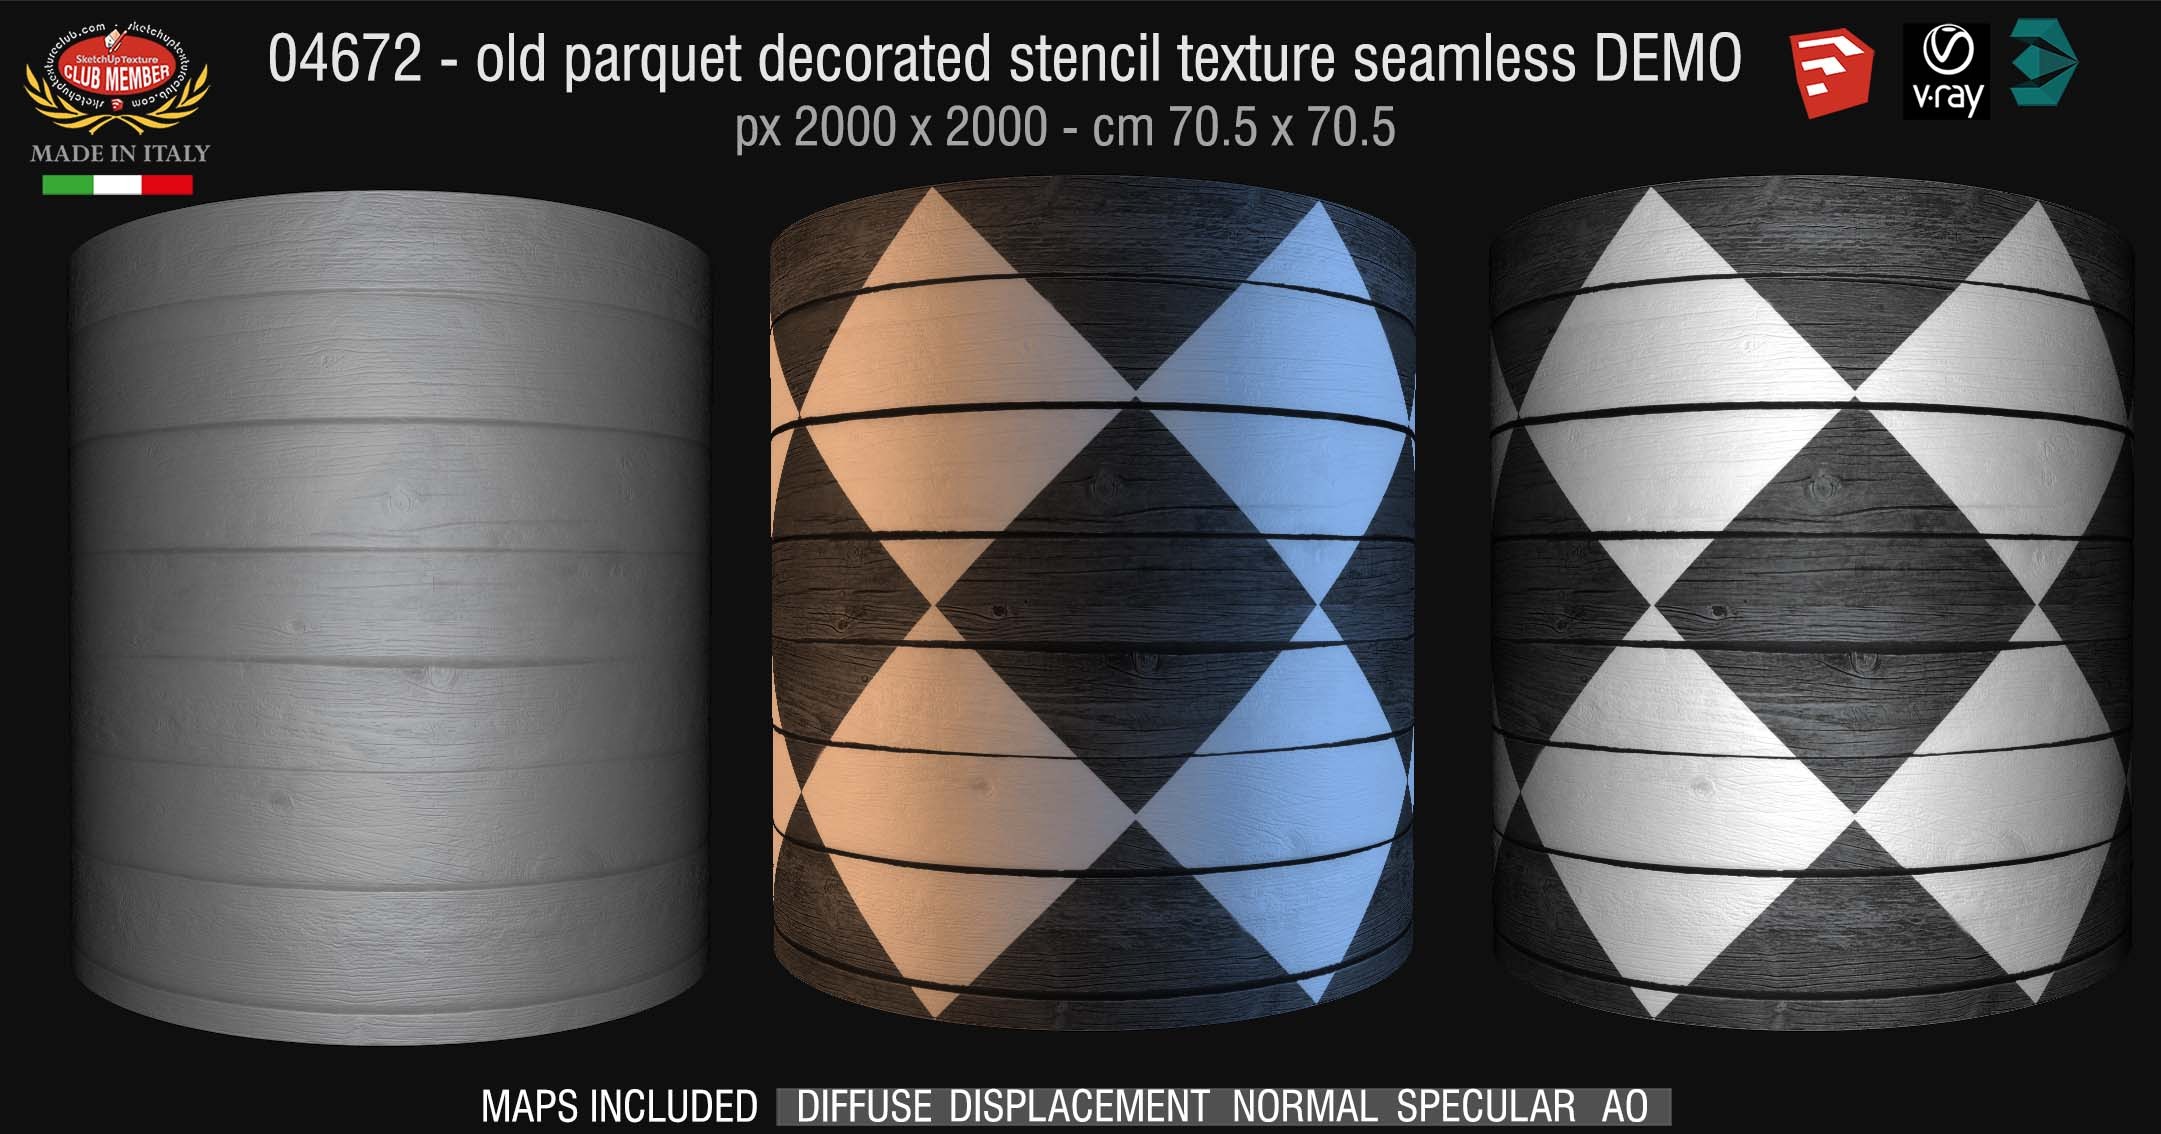 04672 HR Parquet decorated stencil texture seamless + maps DEMO